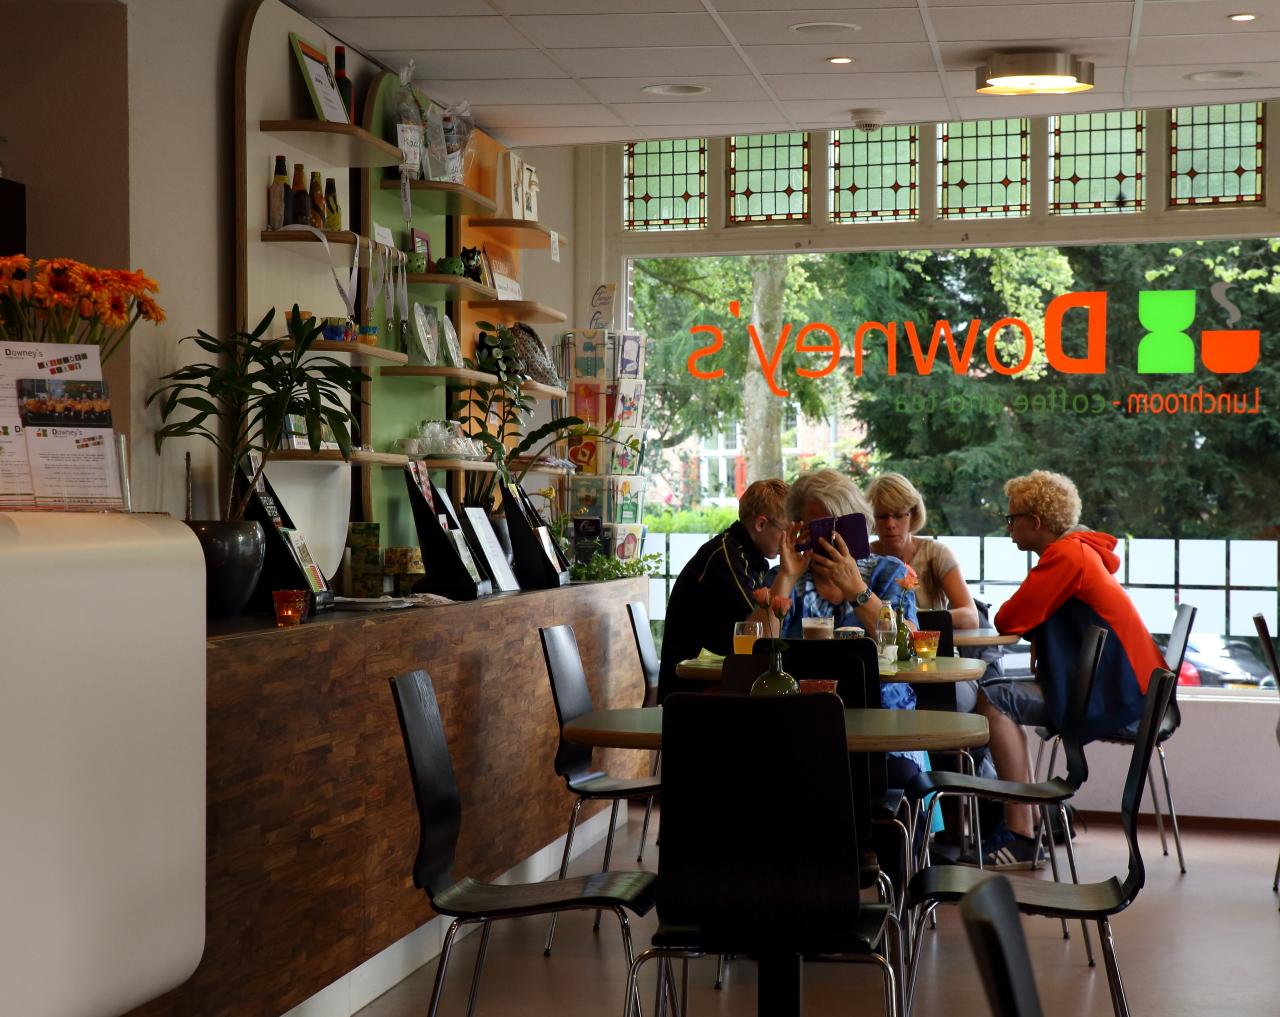 Foto Downey's Coffee and Tea in Amersfoort, Eten & drinken, Koffie, thee & gebak, Lunchen - #3